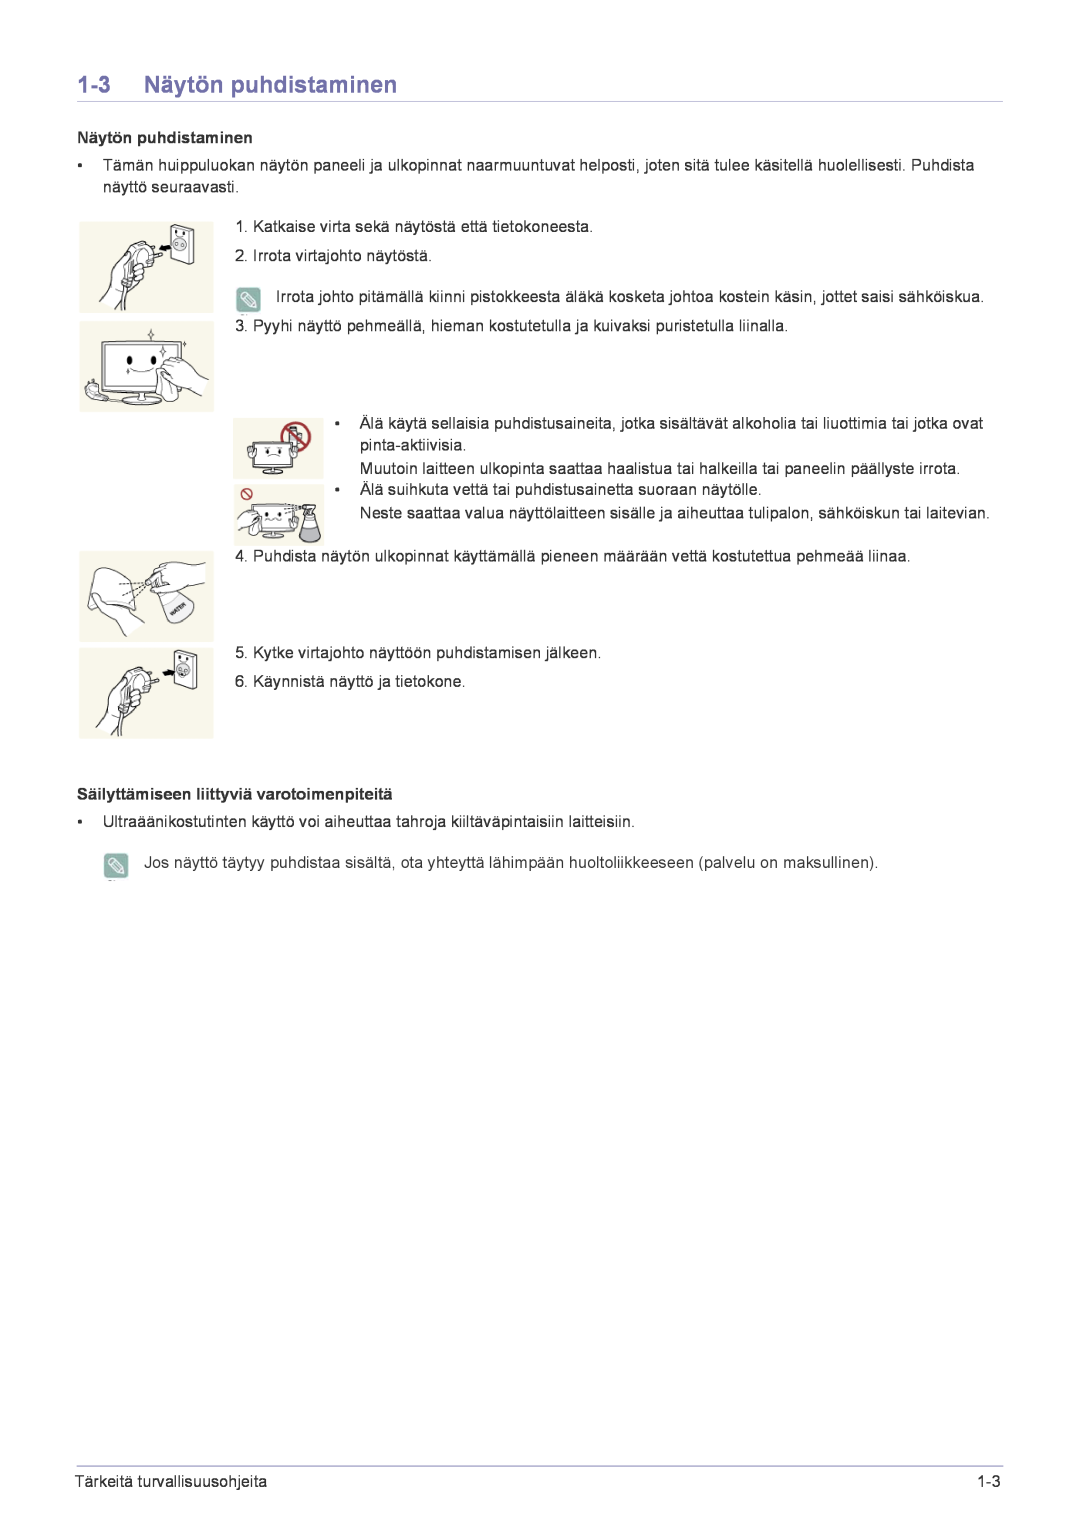 Samsung LF22NPBHBNP/EN manual 1-3 Näytön puhdistaminen, Säilyttämiseen liittyviä varotoimenpiteitä 